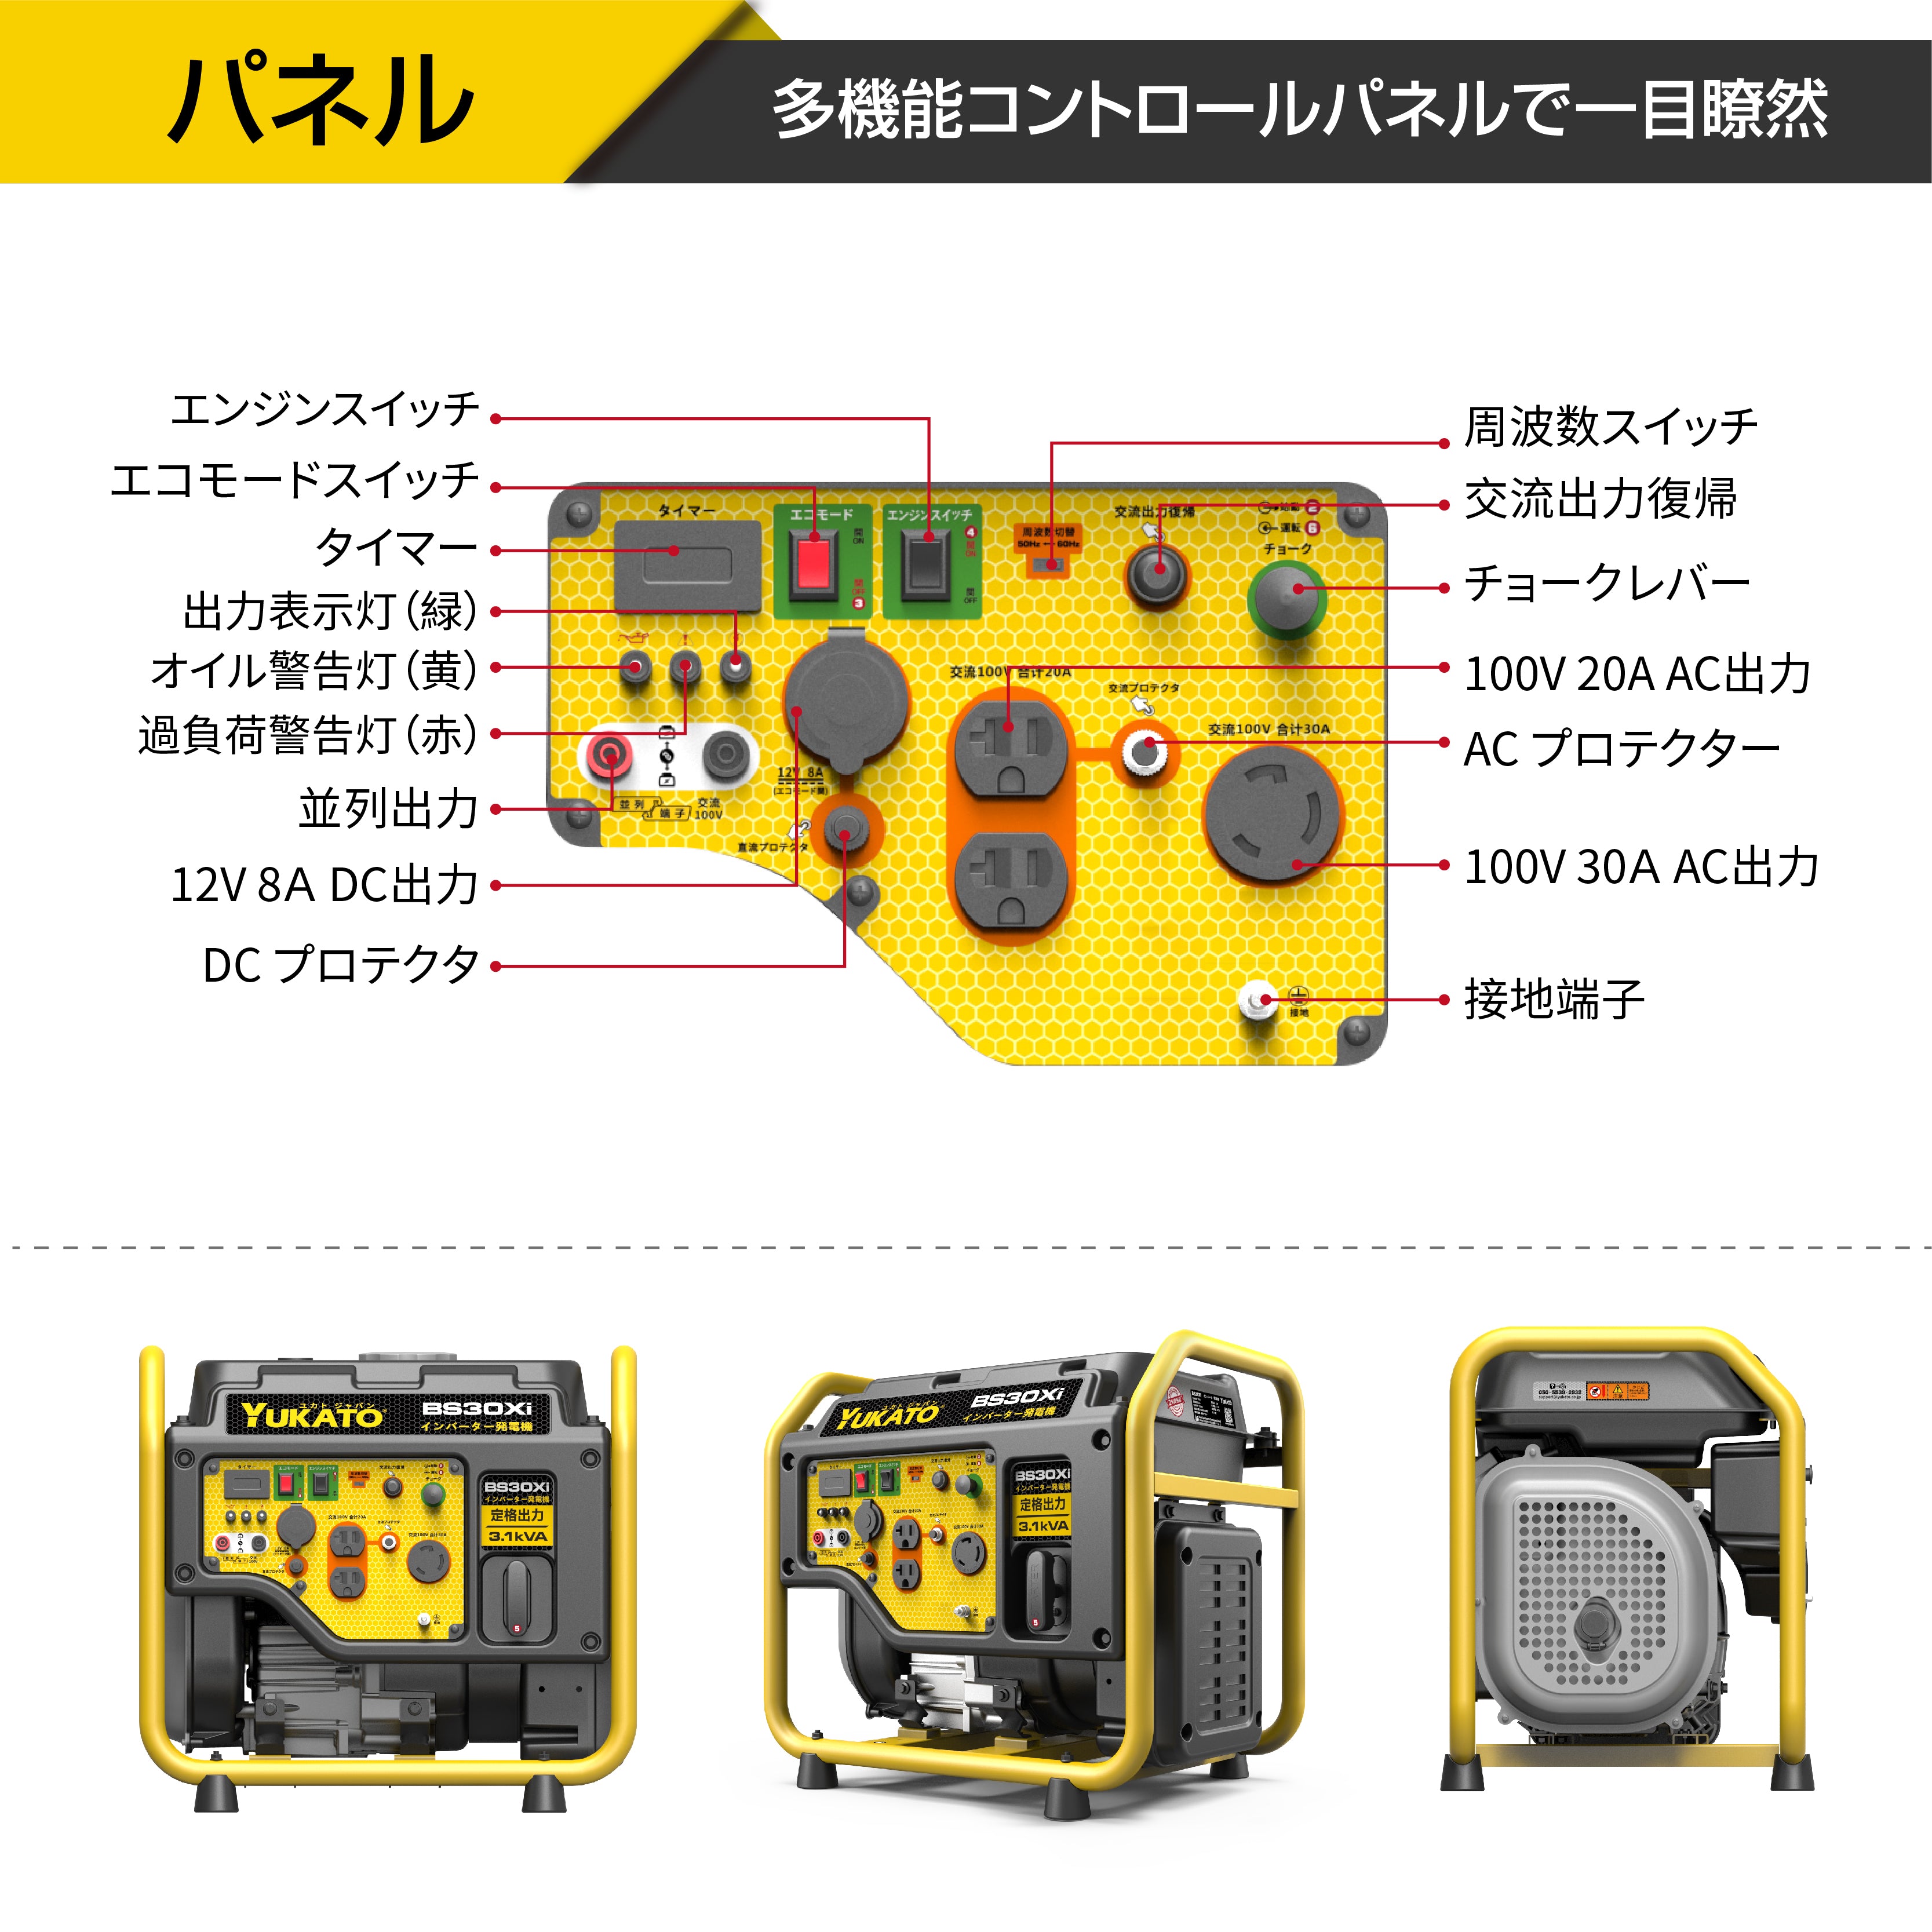 YUKATO BS30Xi インバーター発電機 オープンタイプ 3100W – YUKATO